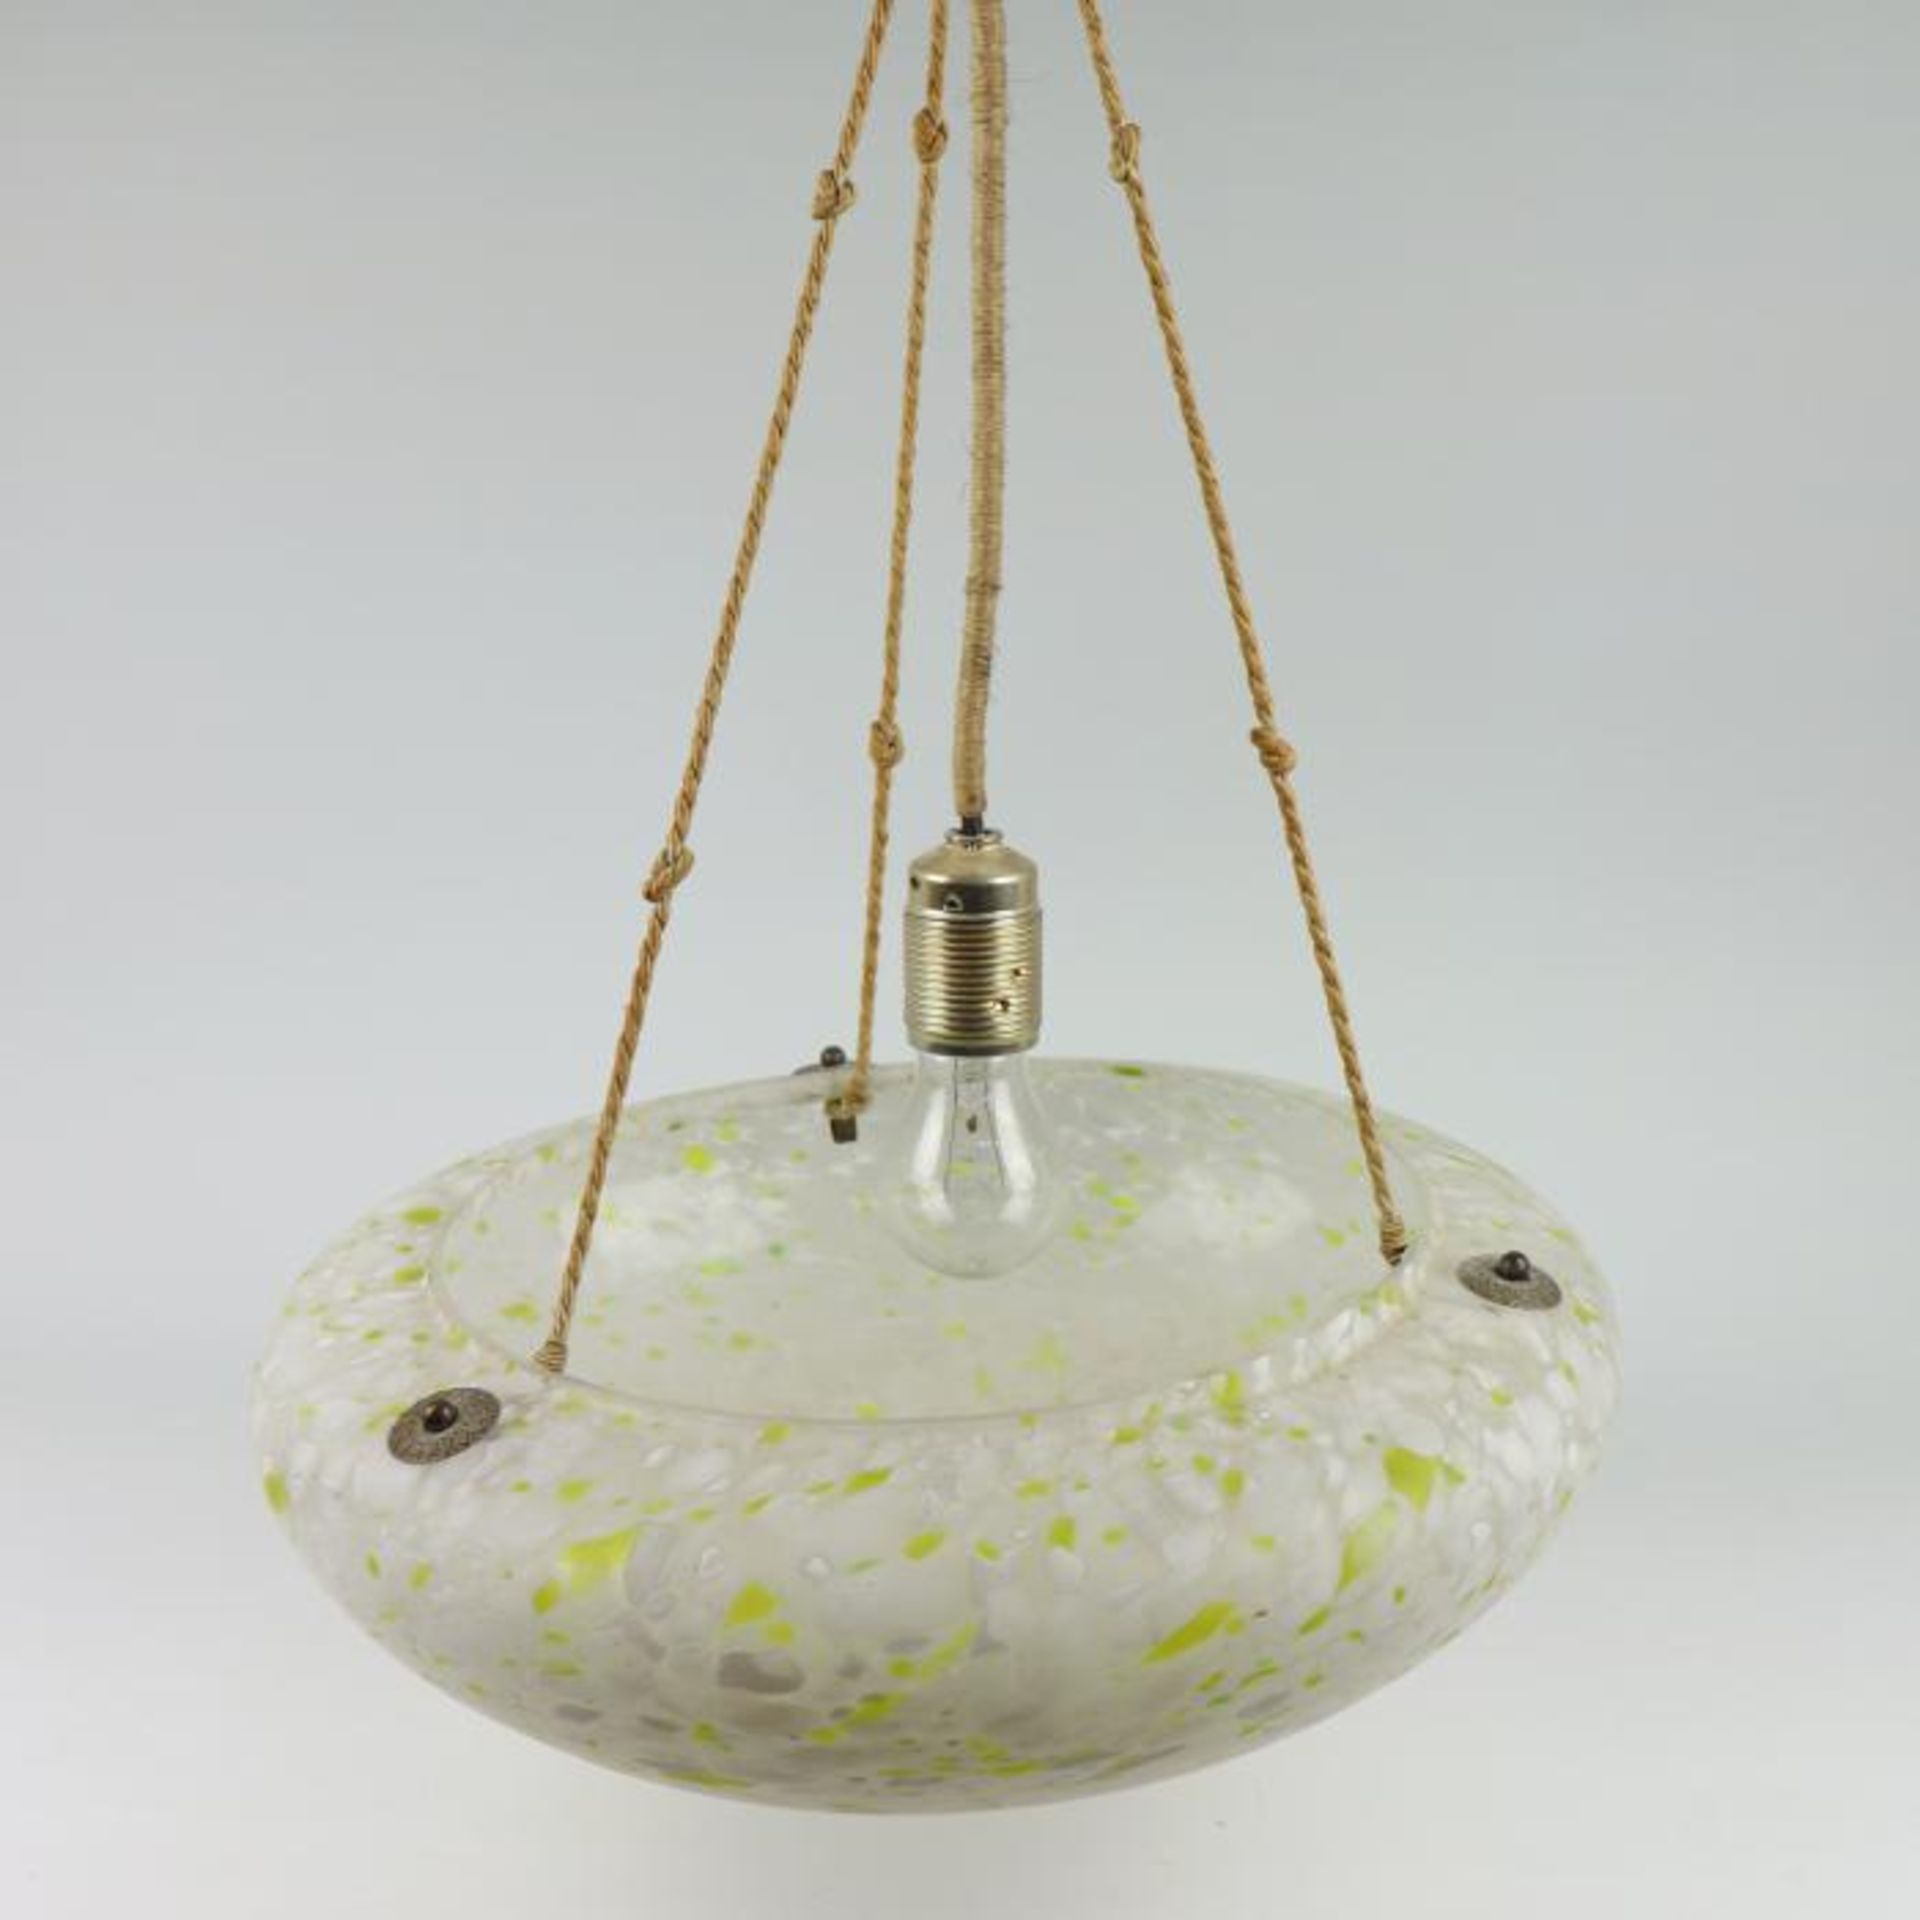 DeckenlampeGlas, 2-flammig, runde, gemuldete Form, farbloses Glas m. grünen u. weißen Auf-/